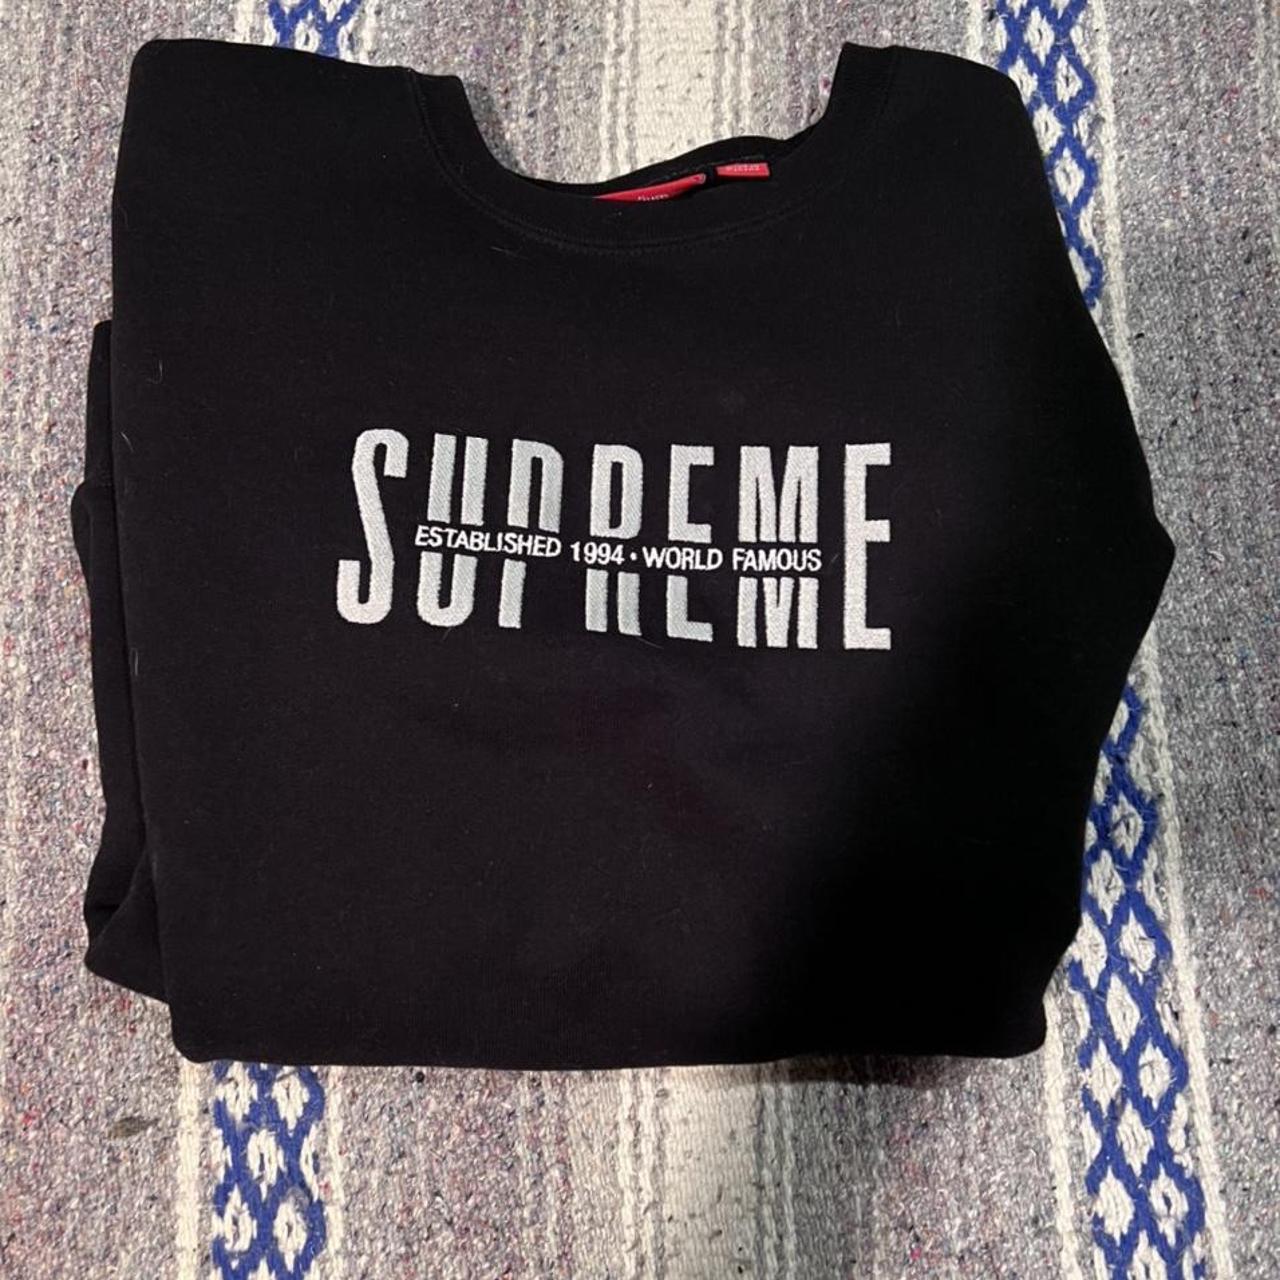 supreme sweater slightly used #supreme #sweater - Depop